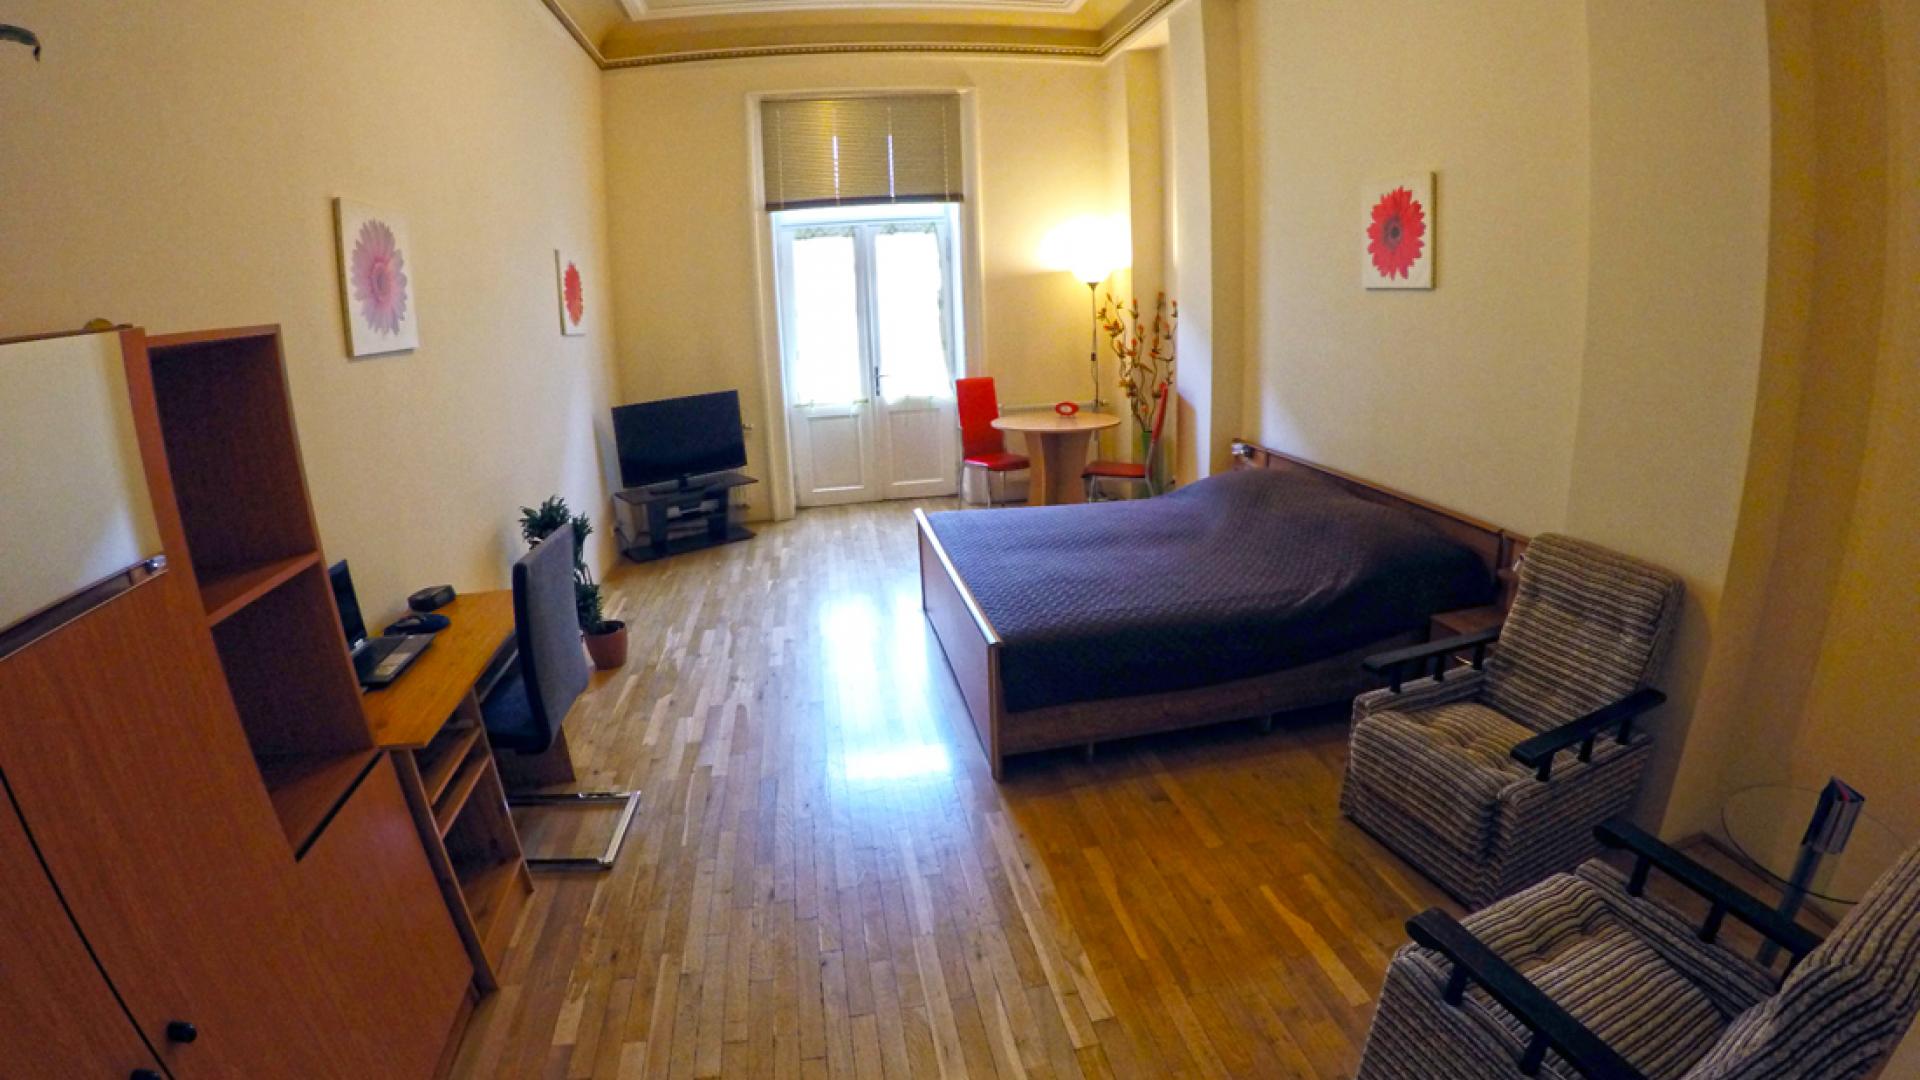 Apartament в Праге - Лилия 4